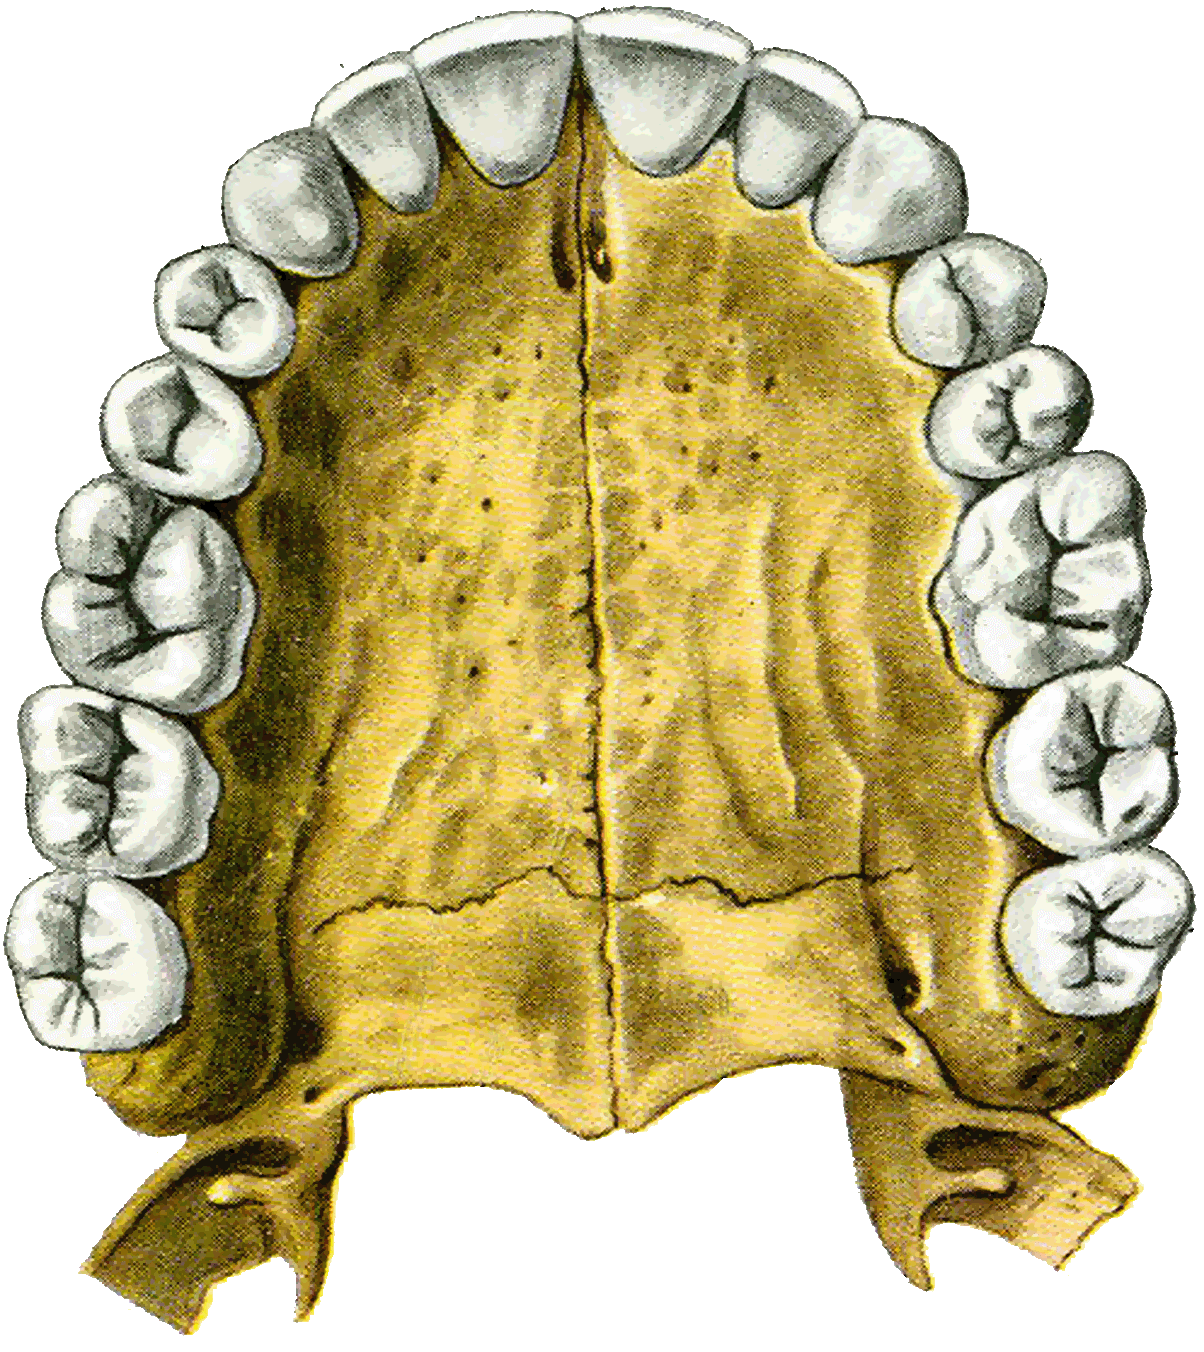 Ковид зубова